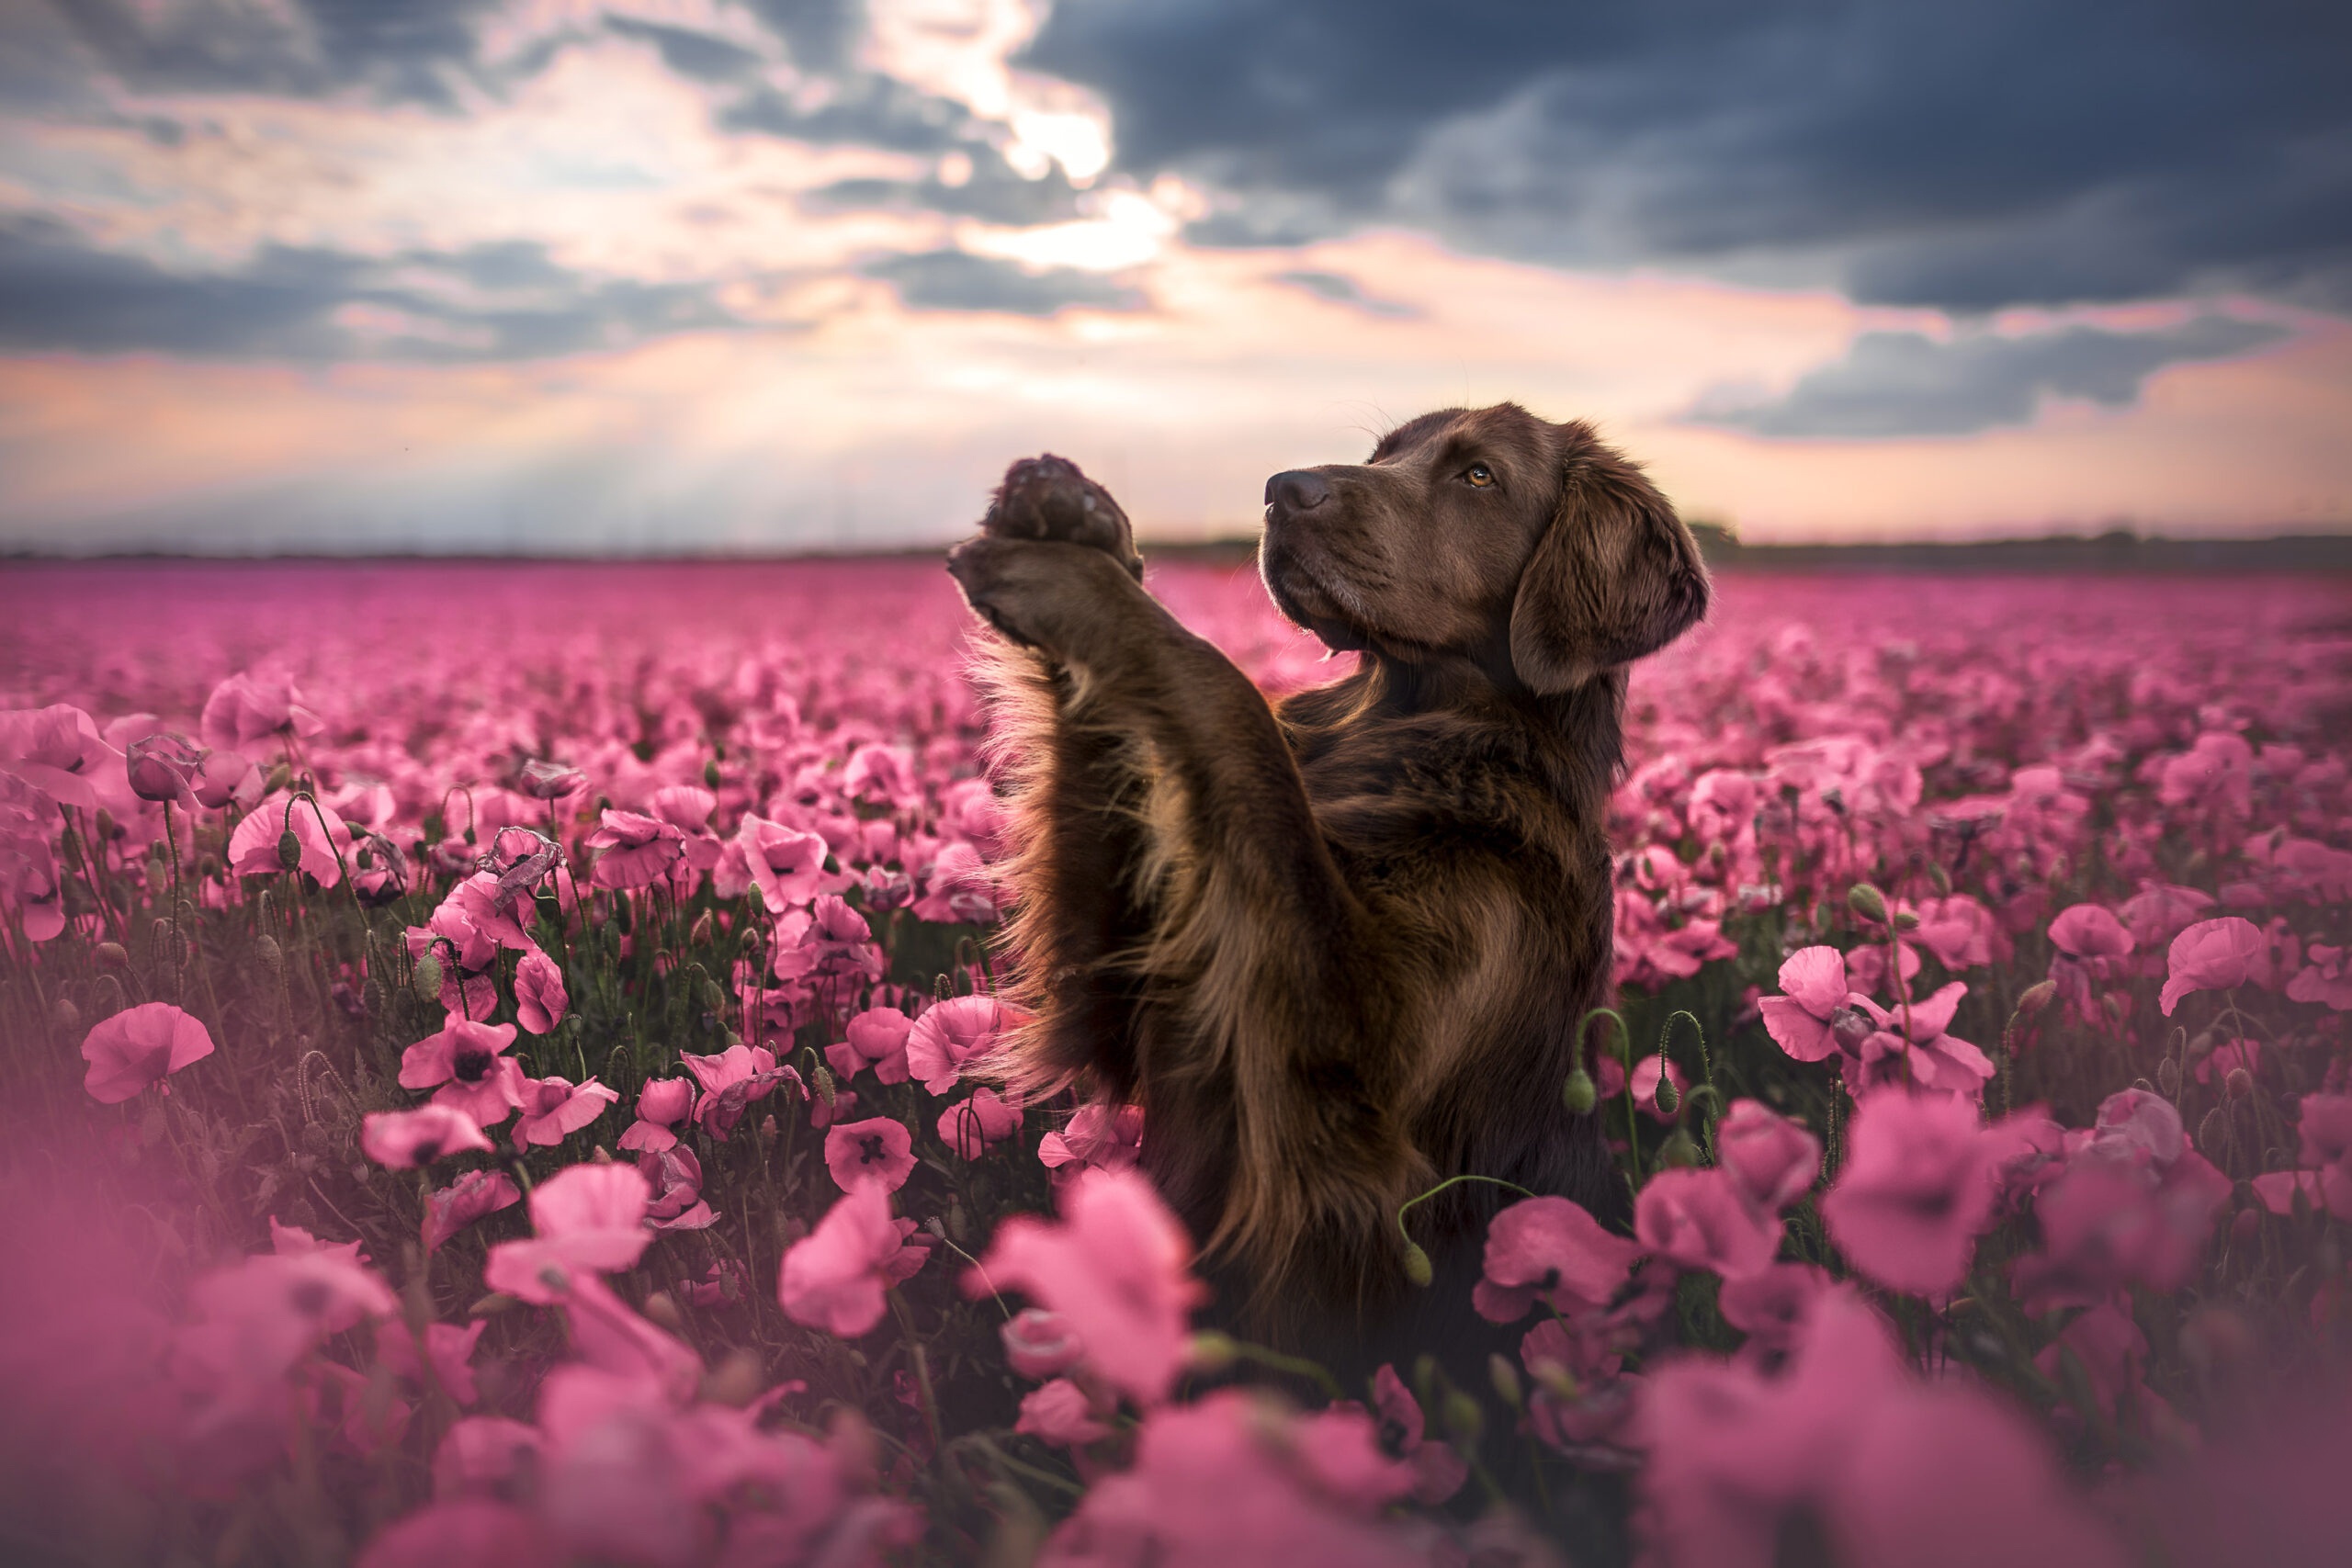 Скачать обои бесплатно Животные, Собаки, Собака, Щенок, Розовый Цветок картинка на рабочий стол ПК